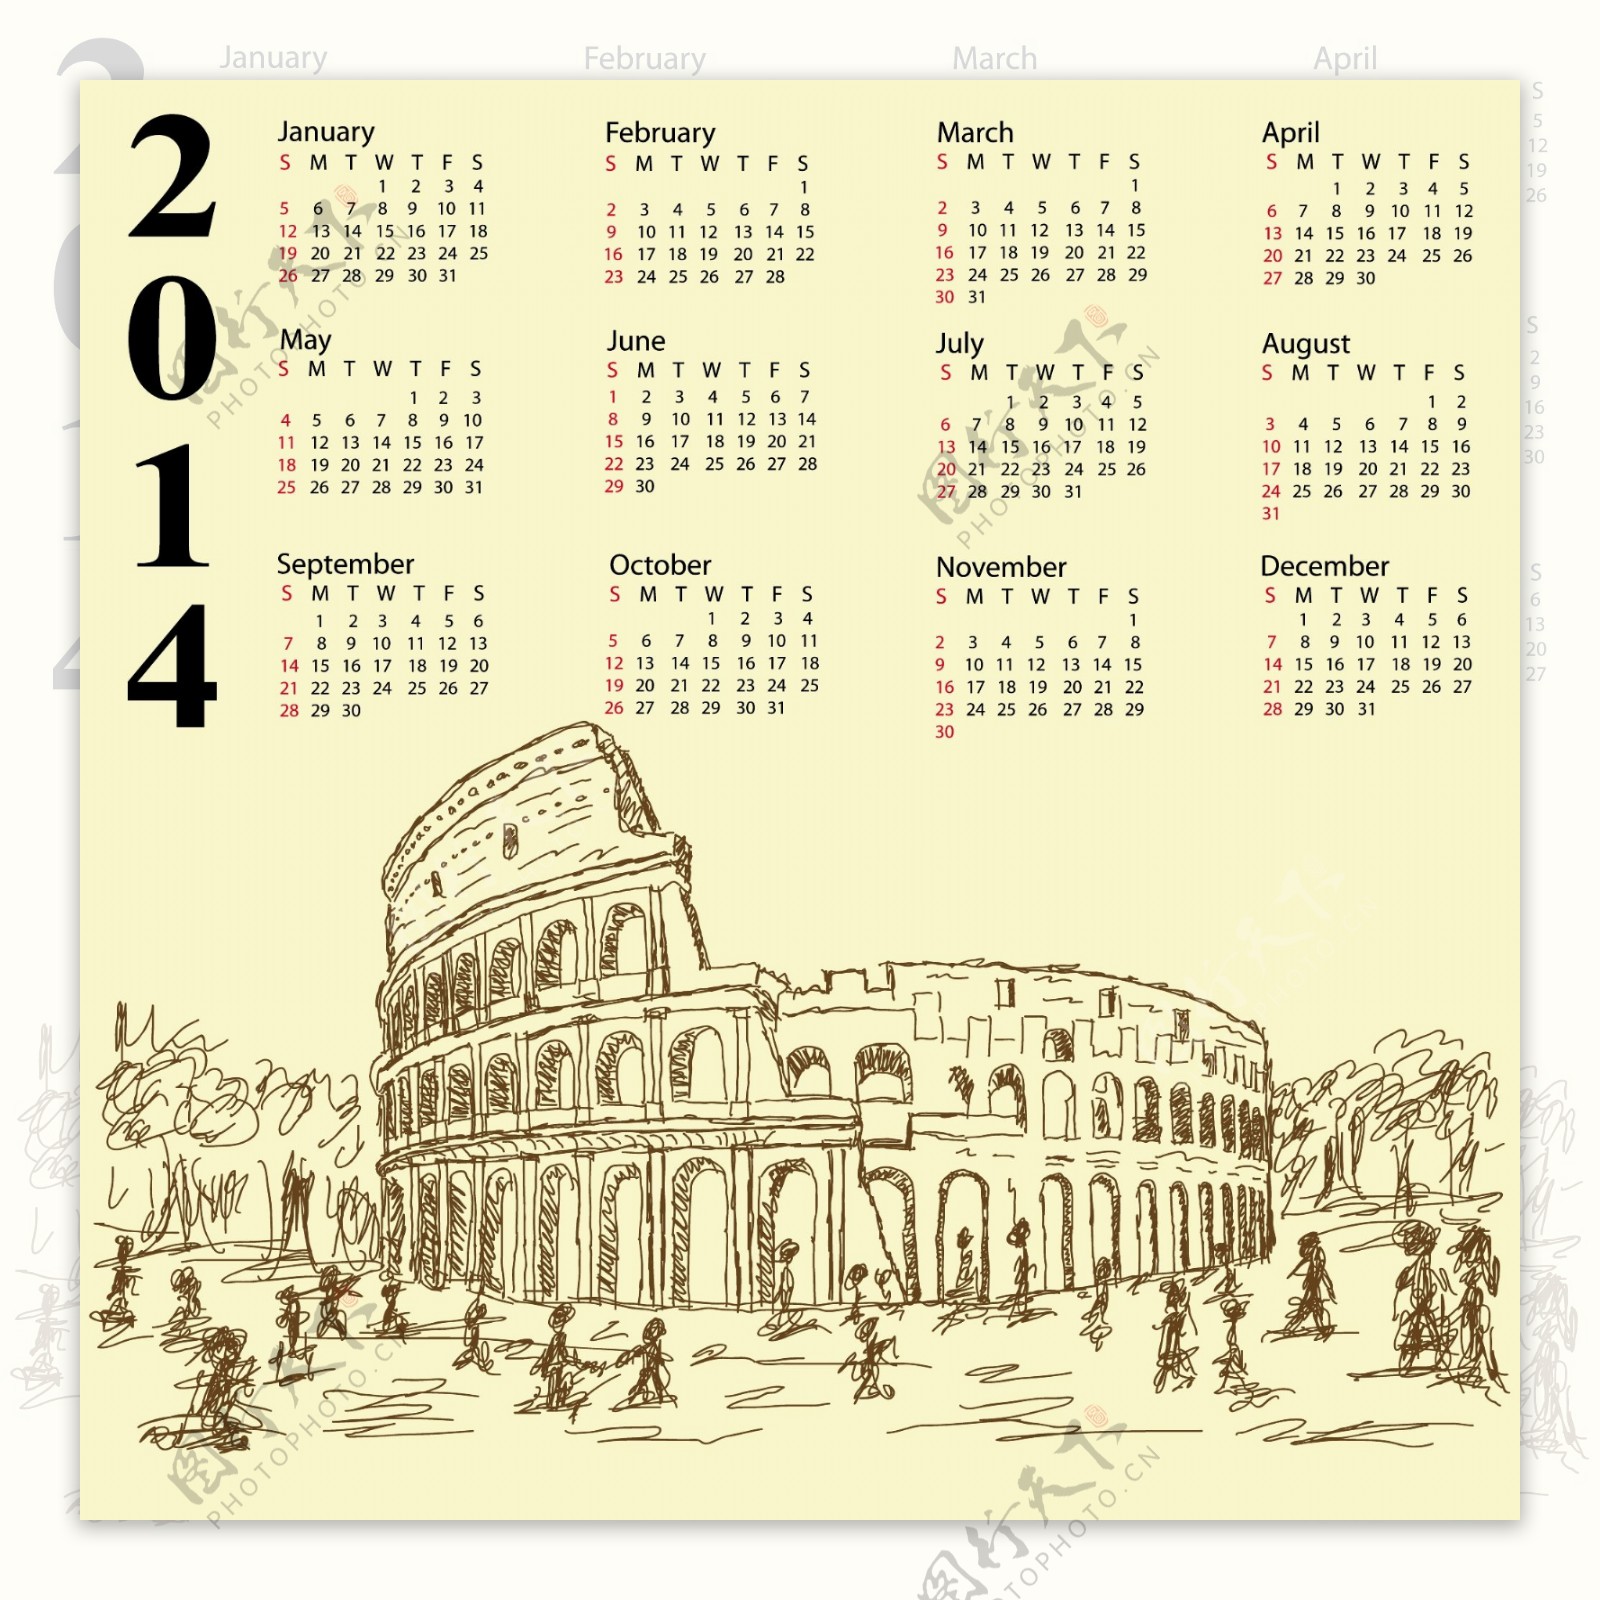 罗马竞技场2014年份的日历